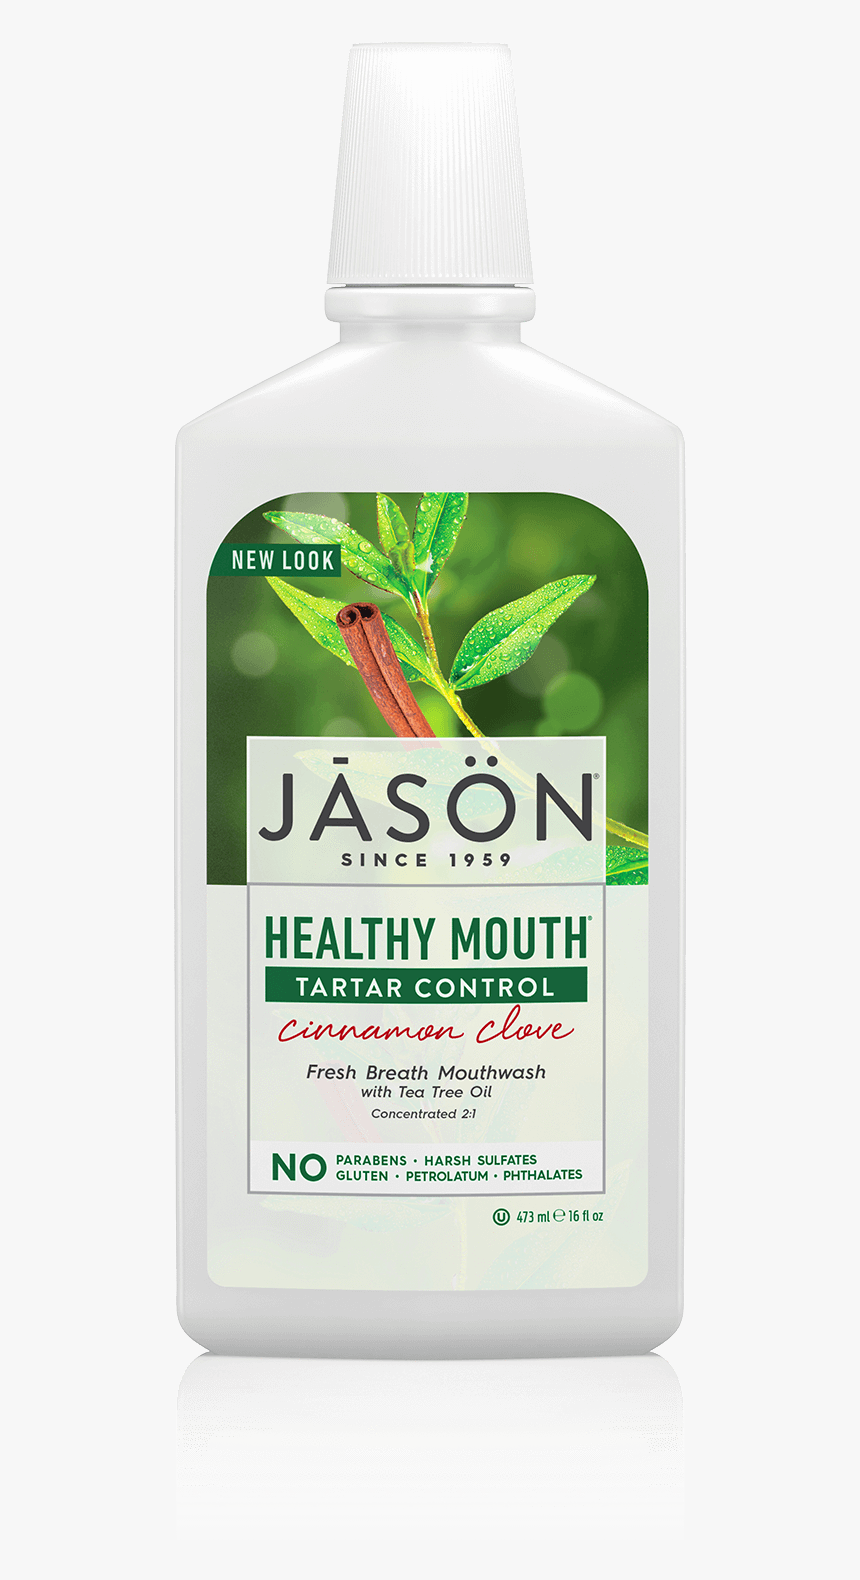 Jāsön Healthy Mouth Mouthwash, HD Png Download, Free Download